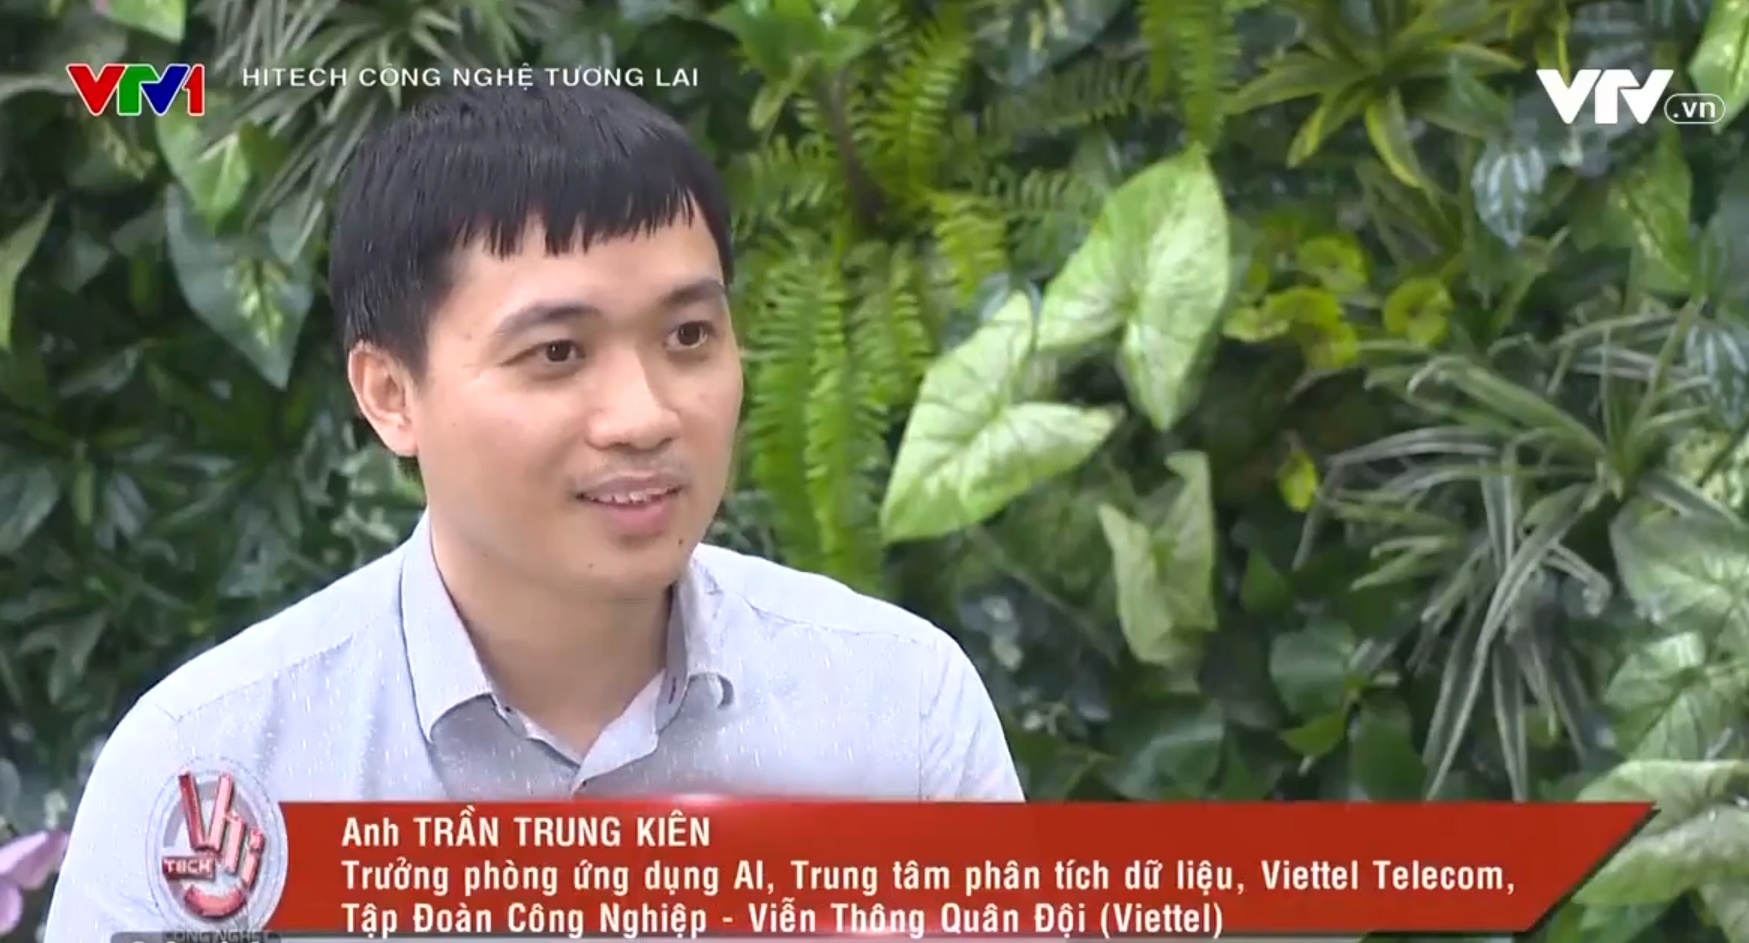 Khám phá người ảo siêu thực Vi An do người Việt Nam phát triển